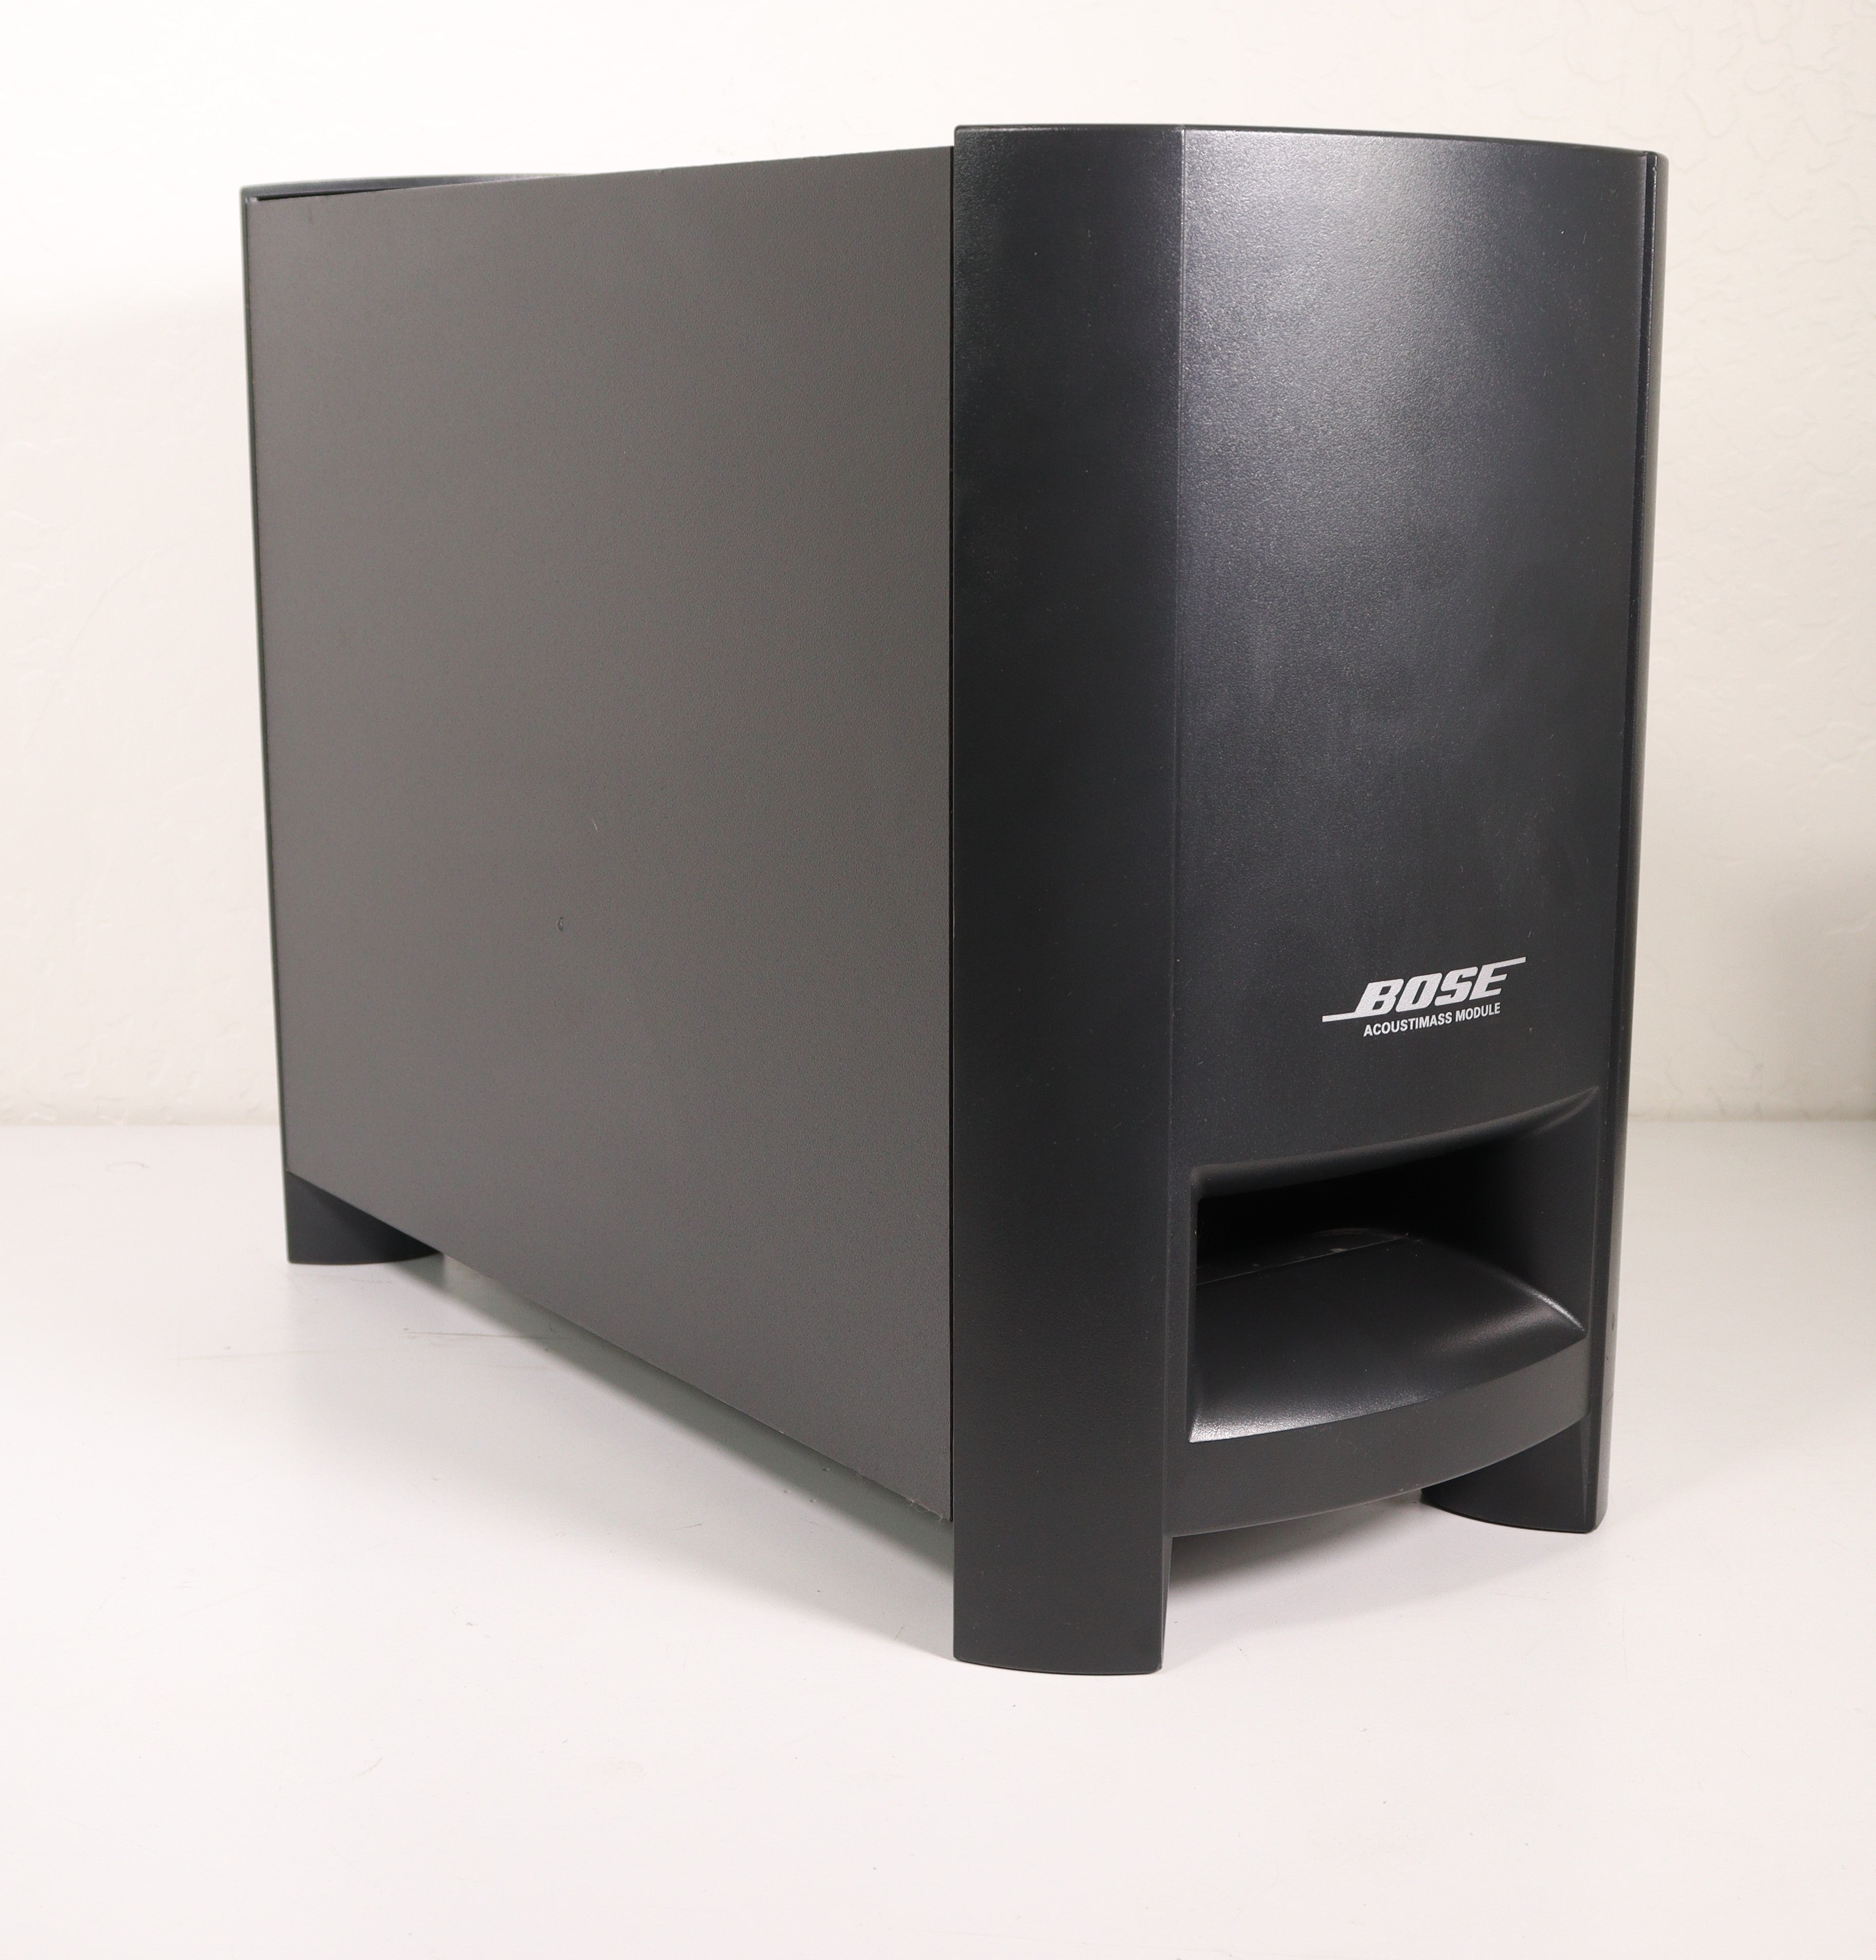 Bose AV3-2-1 Media Center 2.1 Home Theater System CD Subwoofer